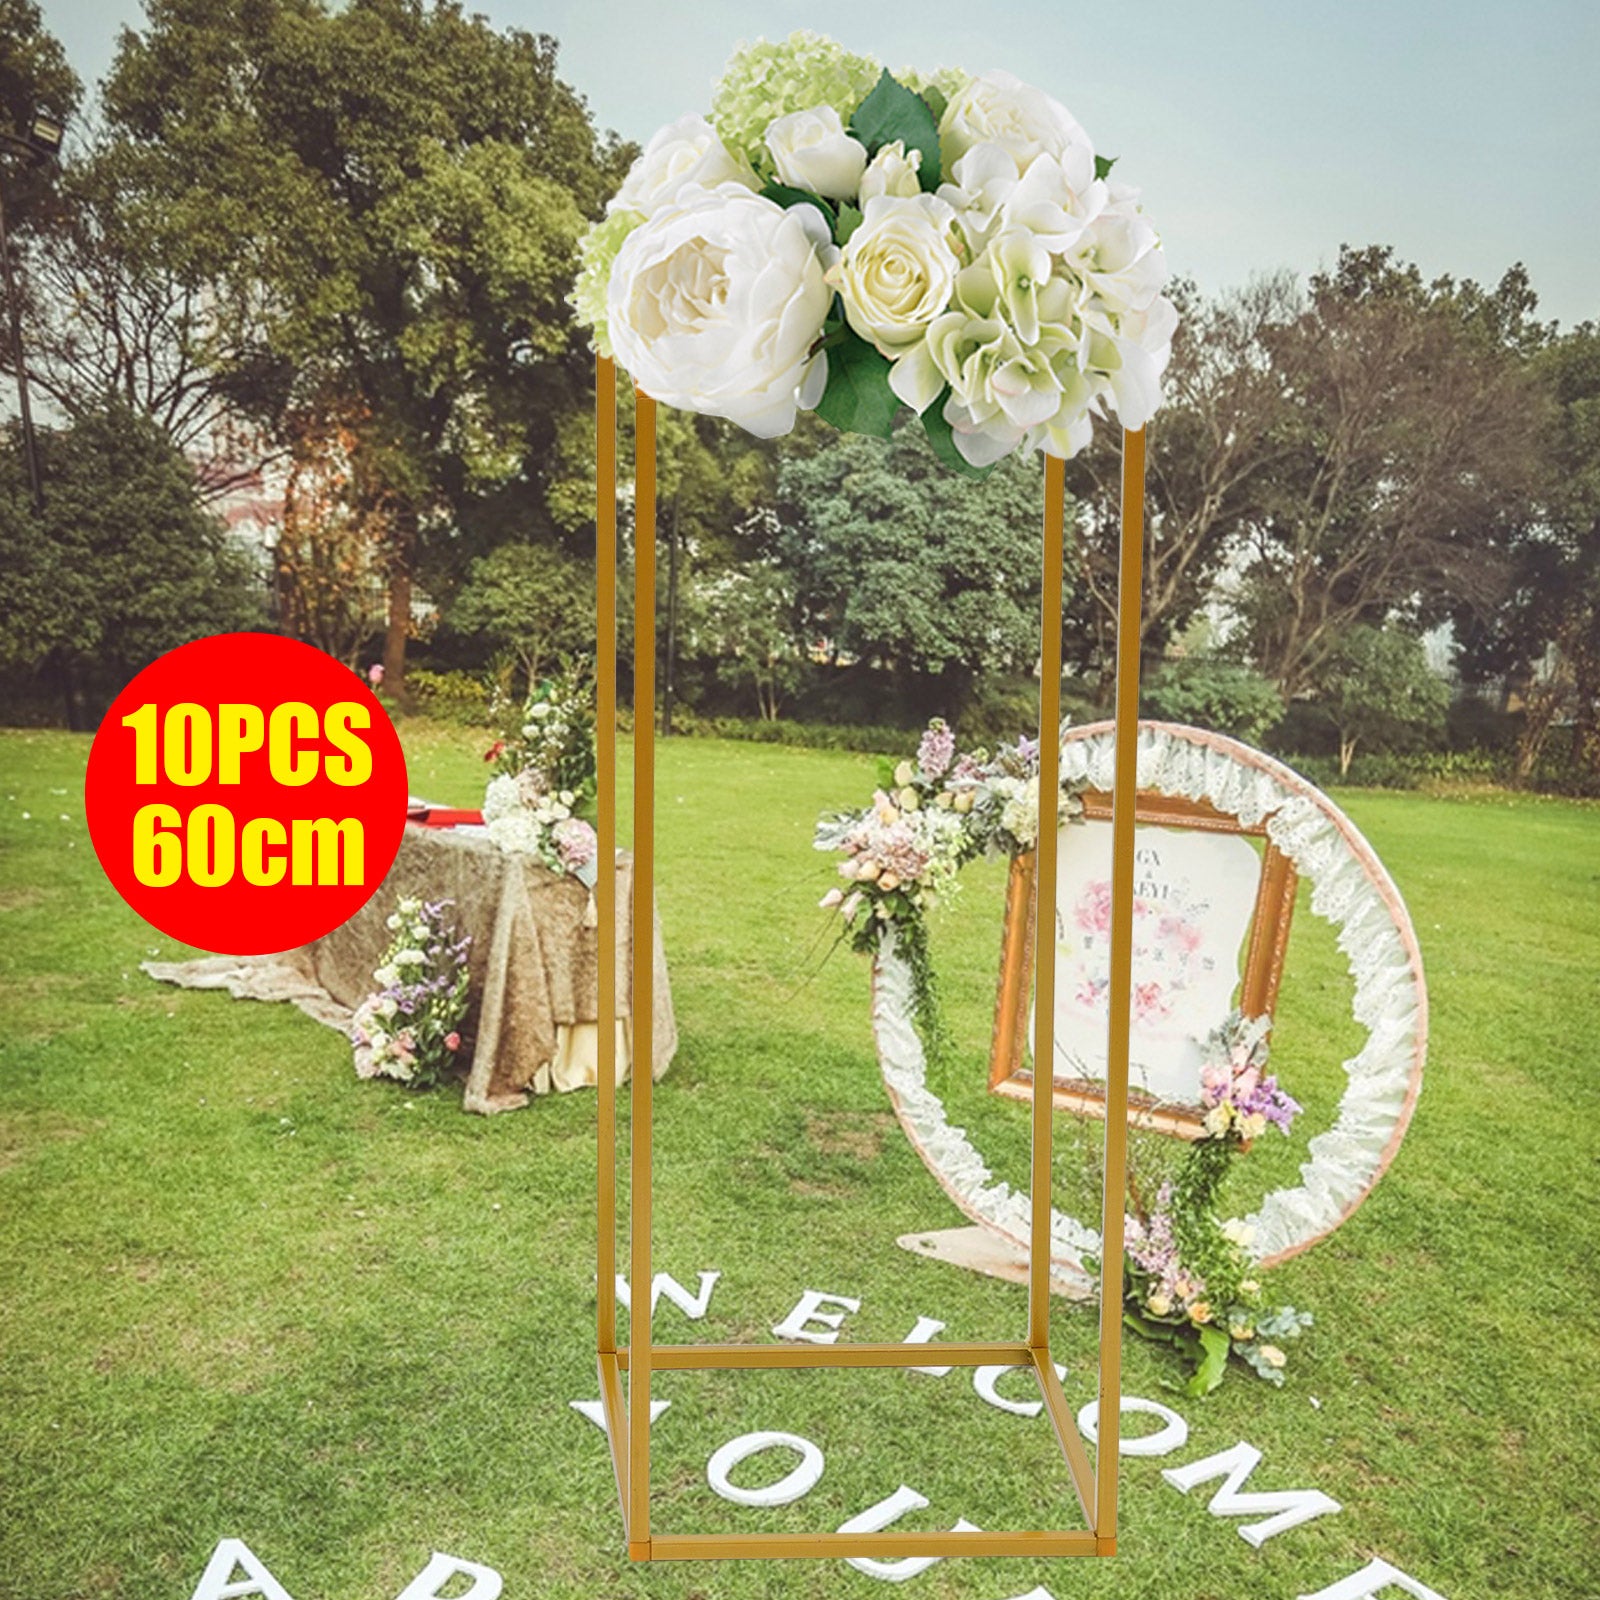 10 Stück 60cm Metall Pflanzenständer Blumenständer Hochzeit